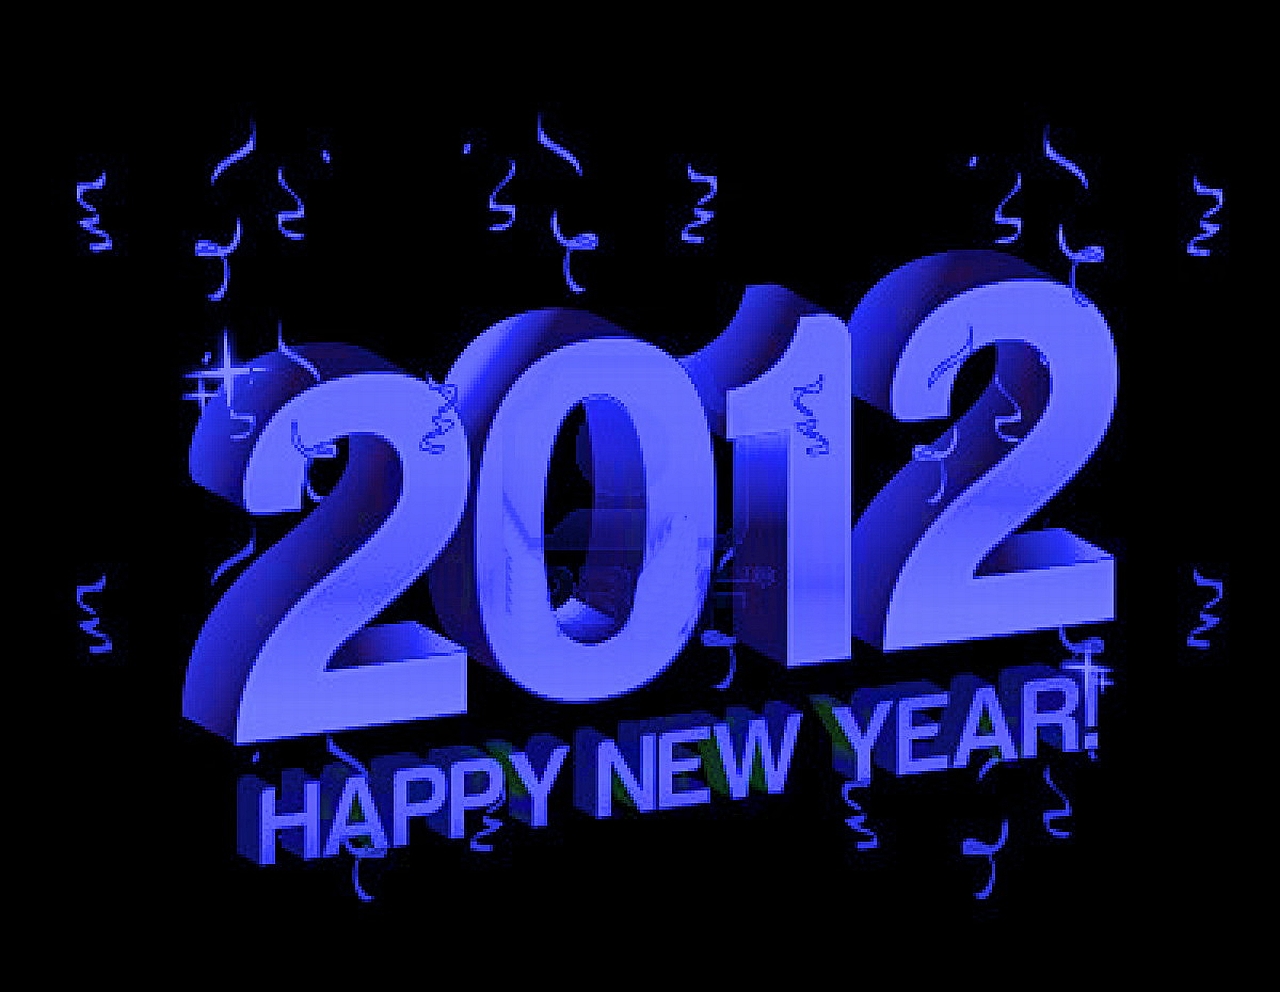 Descarga gratuita de fondo de pantalla para móvil de Año Nuevo 2012, Día Festivo.